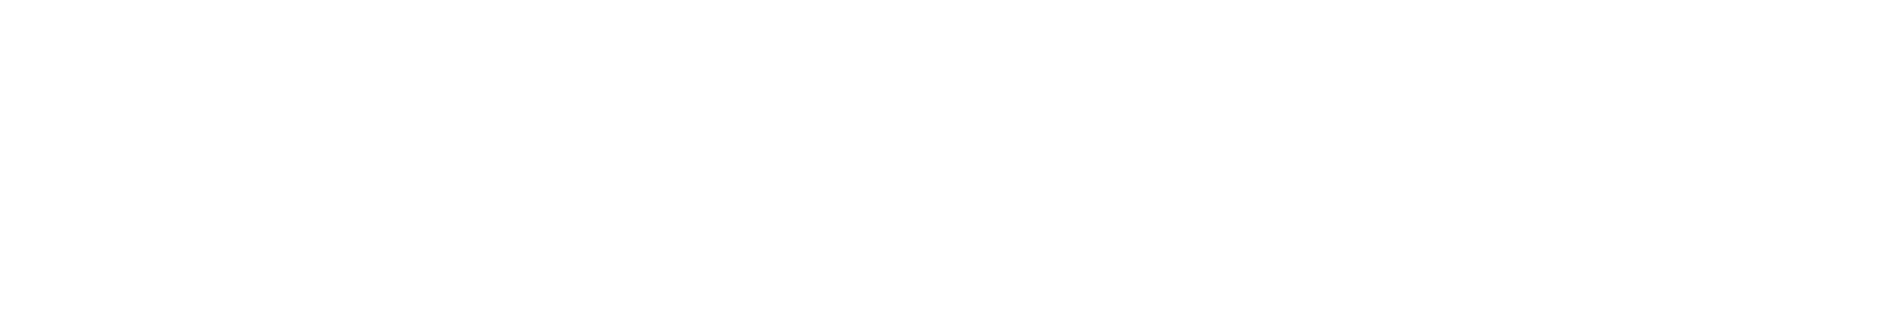 Caffe Culture